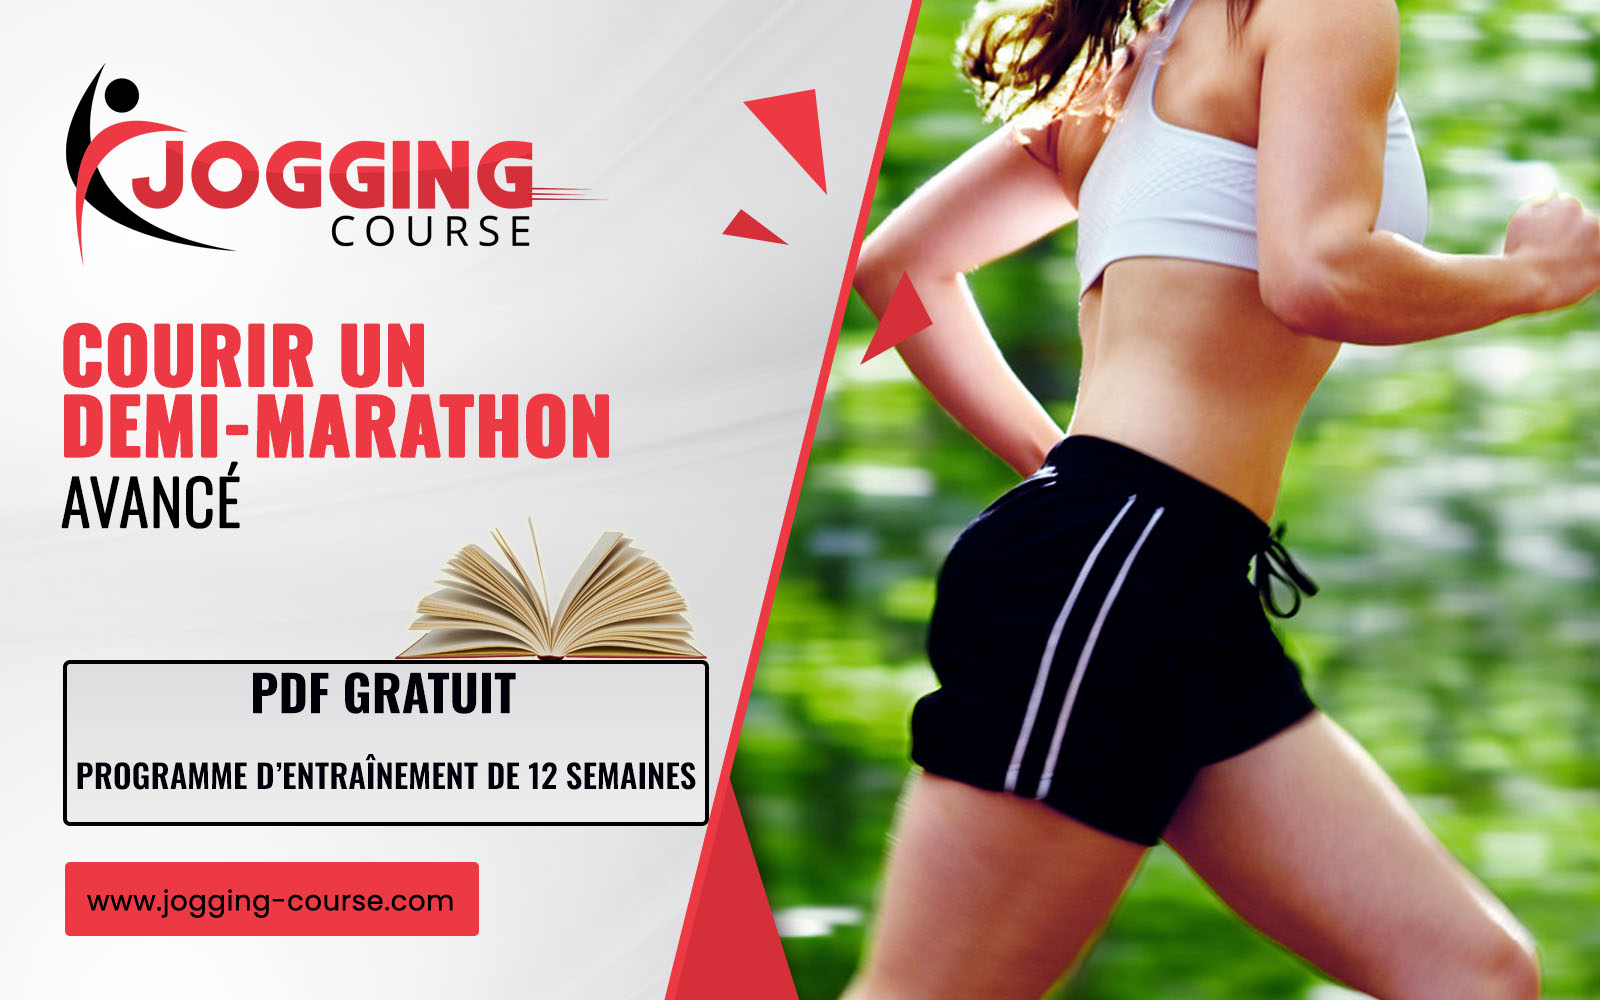 programme de course à pied coureur avancé 21.1 km demi-marathon Jogging-Course